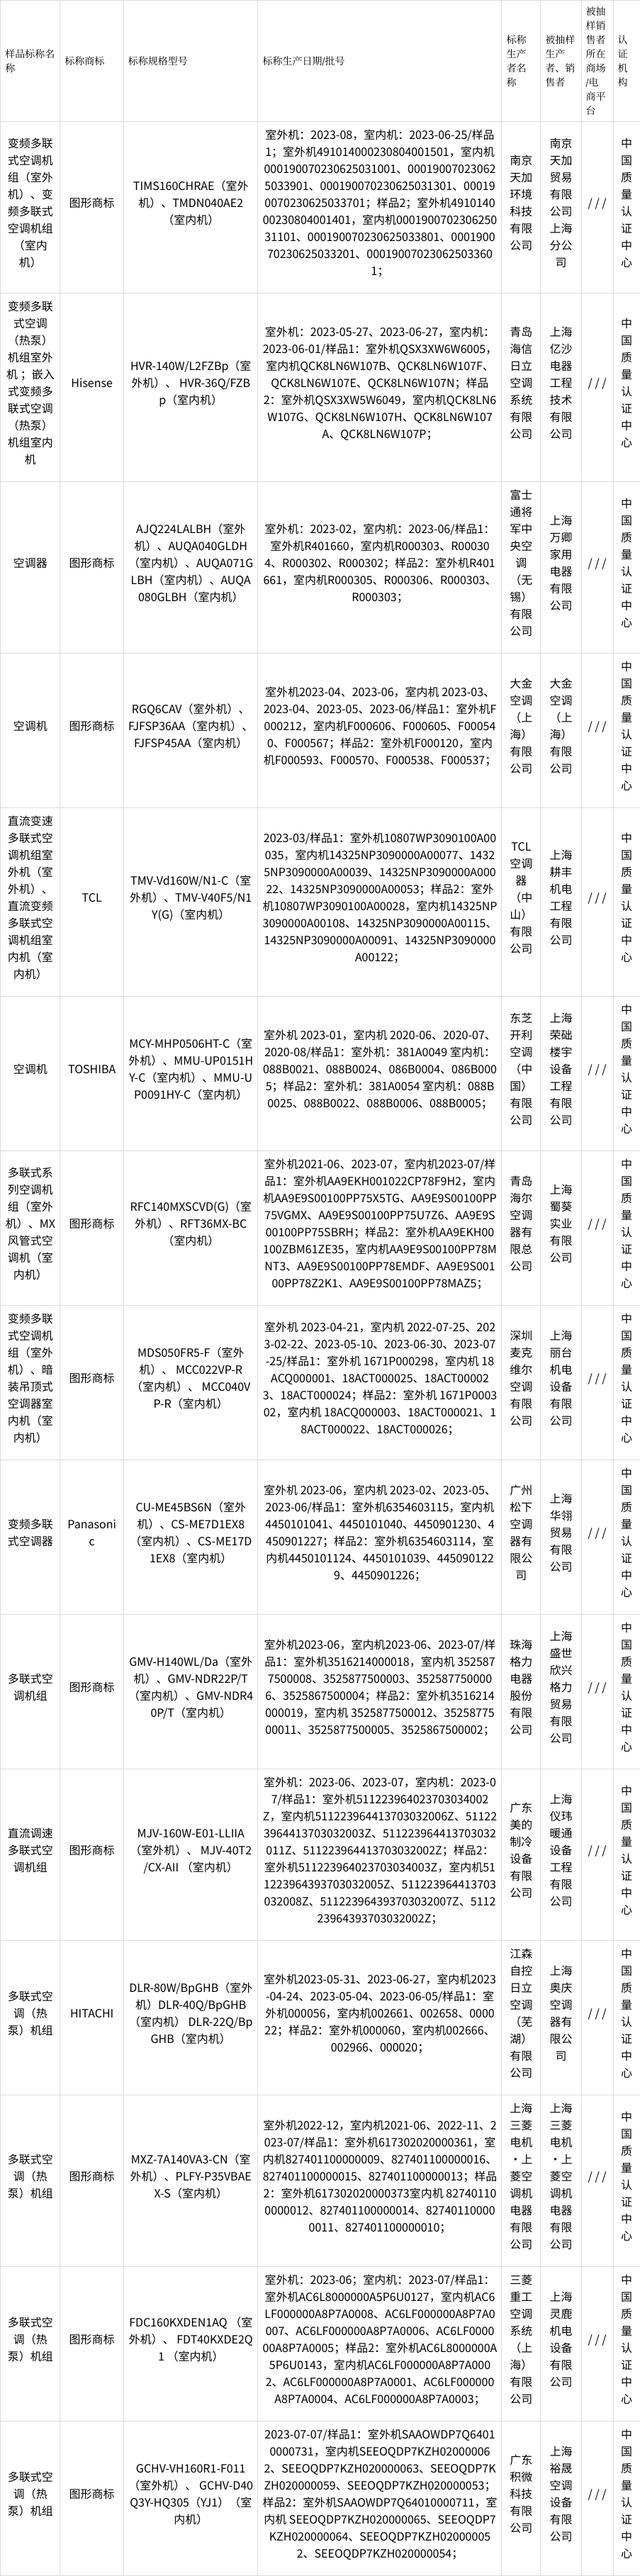 2023年上海市多联机空调产品质量监督抽查结果